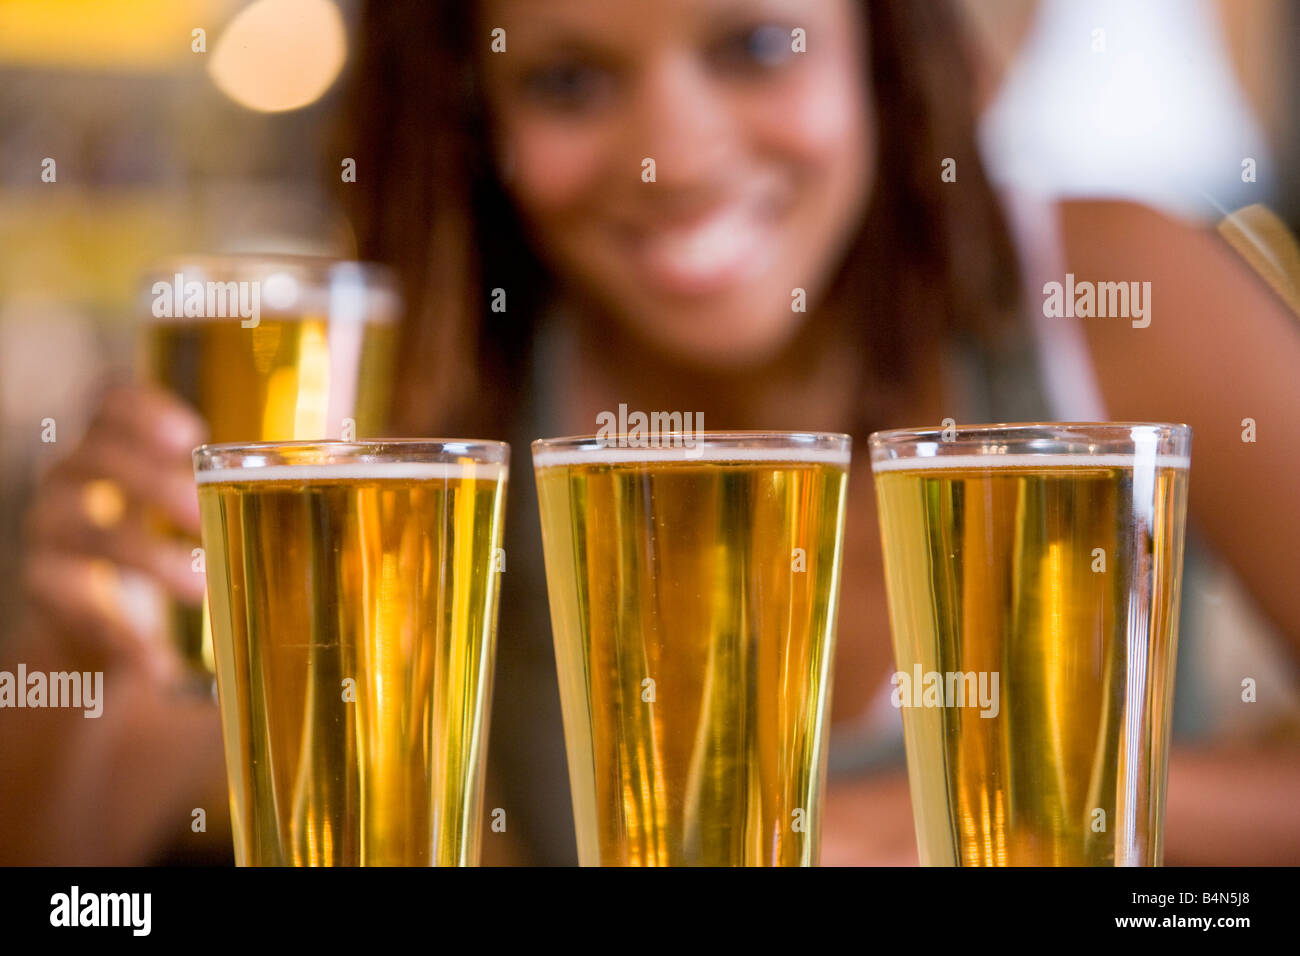 Femme posant avec plusieurs verres de bière Banque D'Images